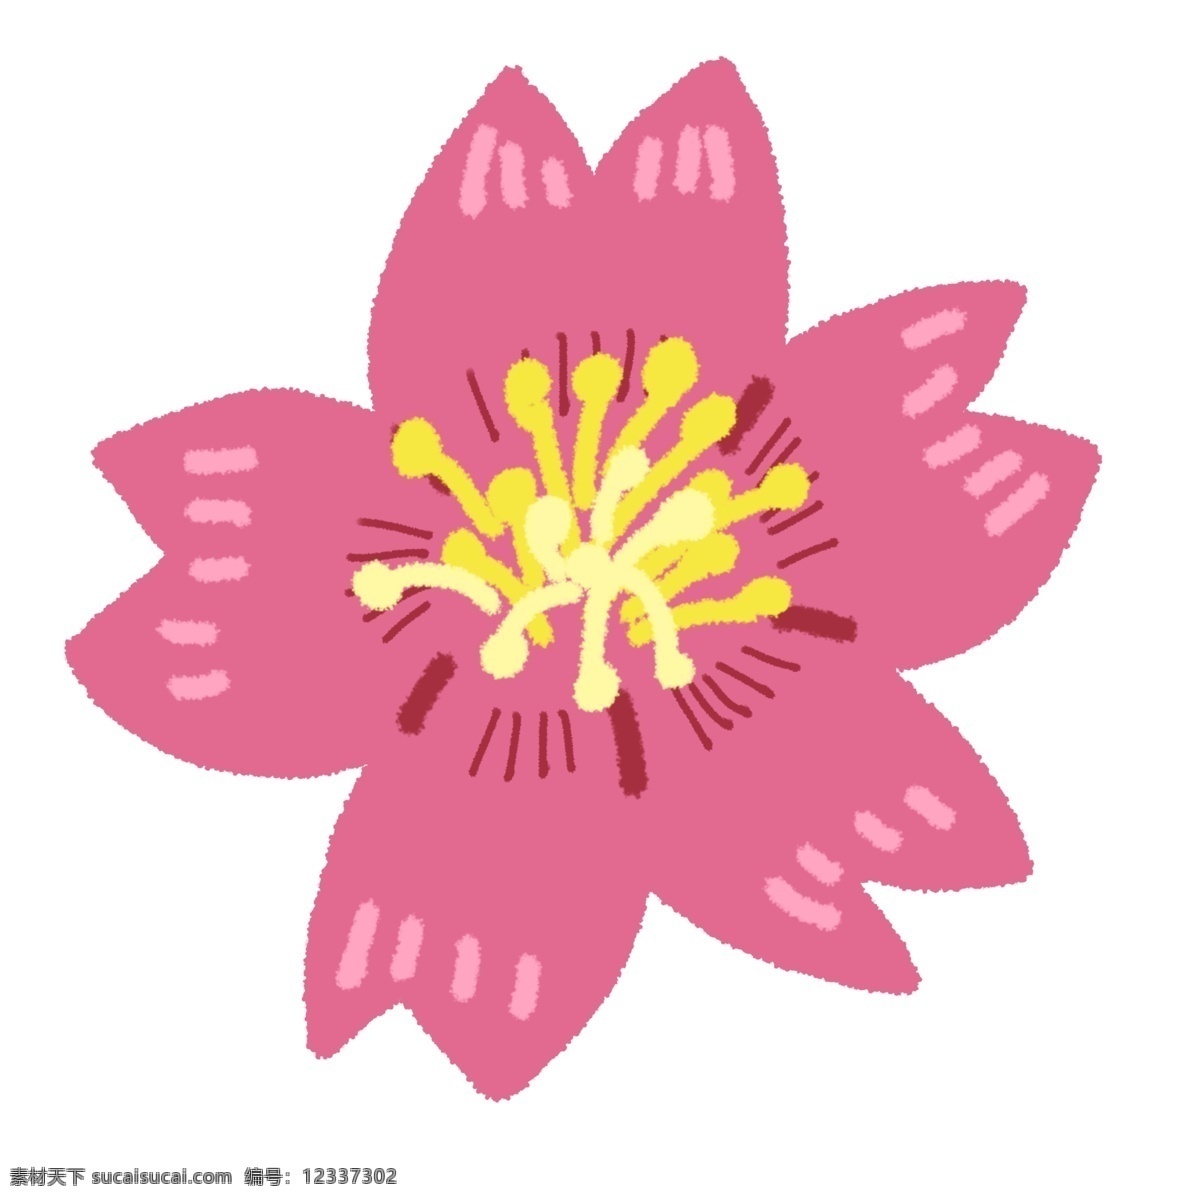 日本 樱花 装饰 插画 日本樱花 粉色的樱花 漂亮的樱花 创意樱花 立体樱花 精美樱花 卡通樱花